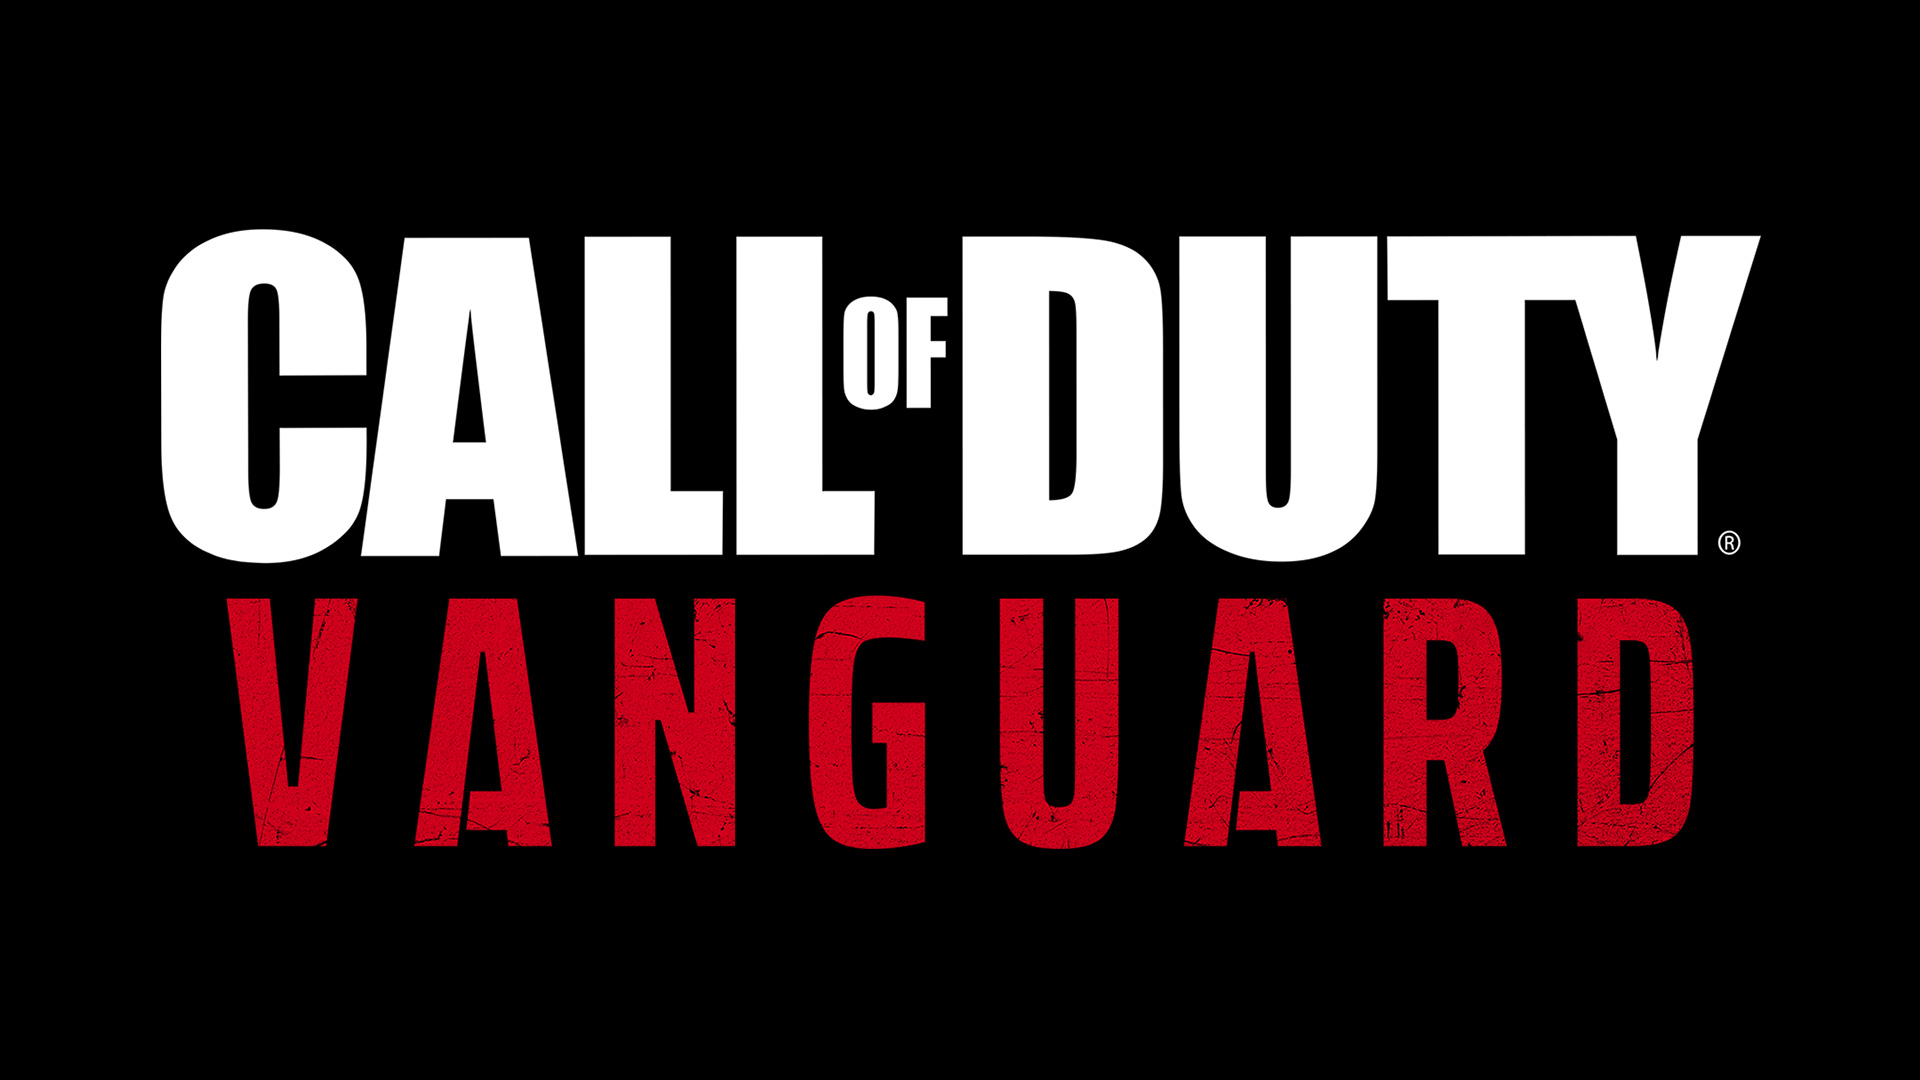 Call of Duty: Vanguard - Desciclopédia